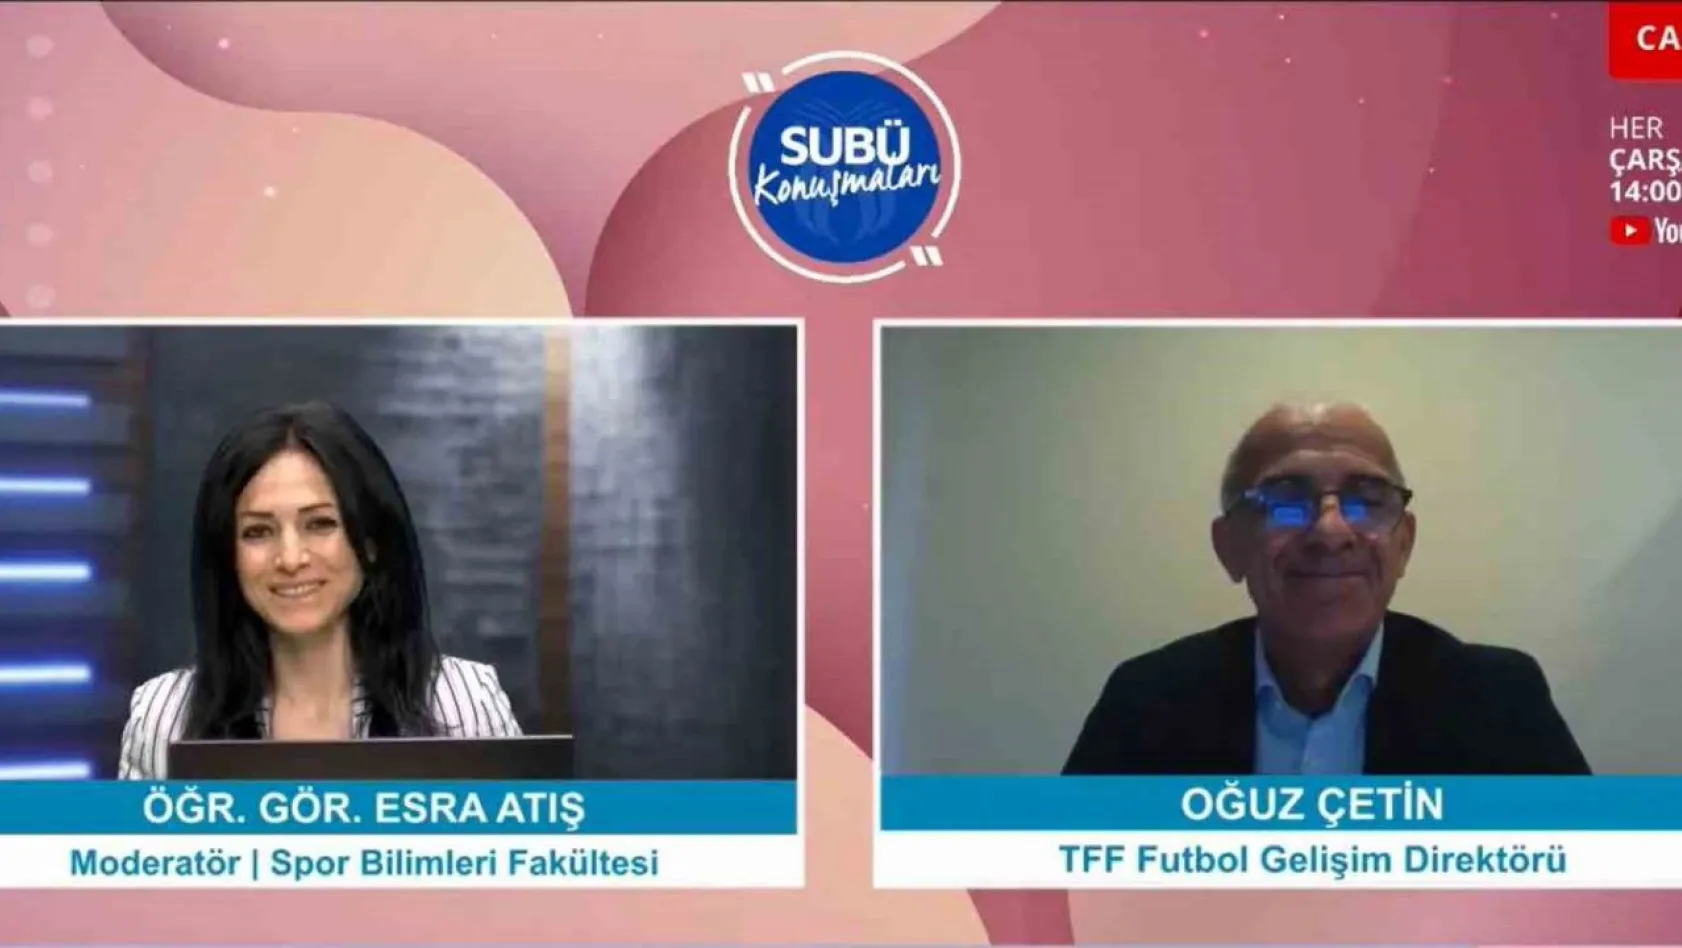 Futbol Gelişim Projesi'ne ilişkin detaylar SUBÜ'de konuşuldu